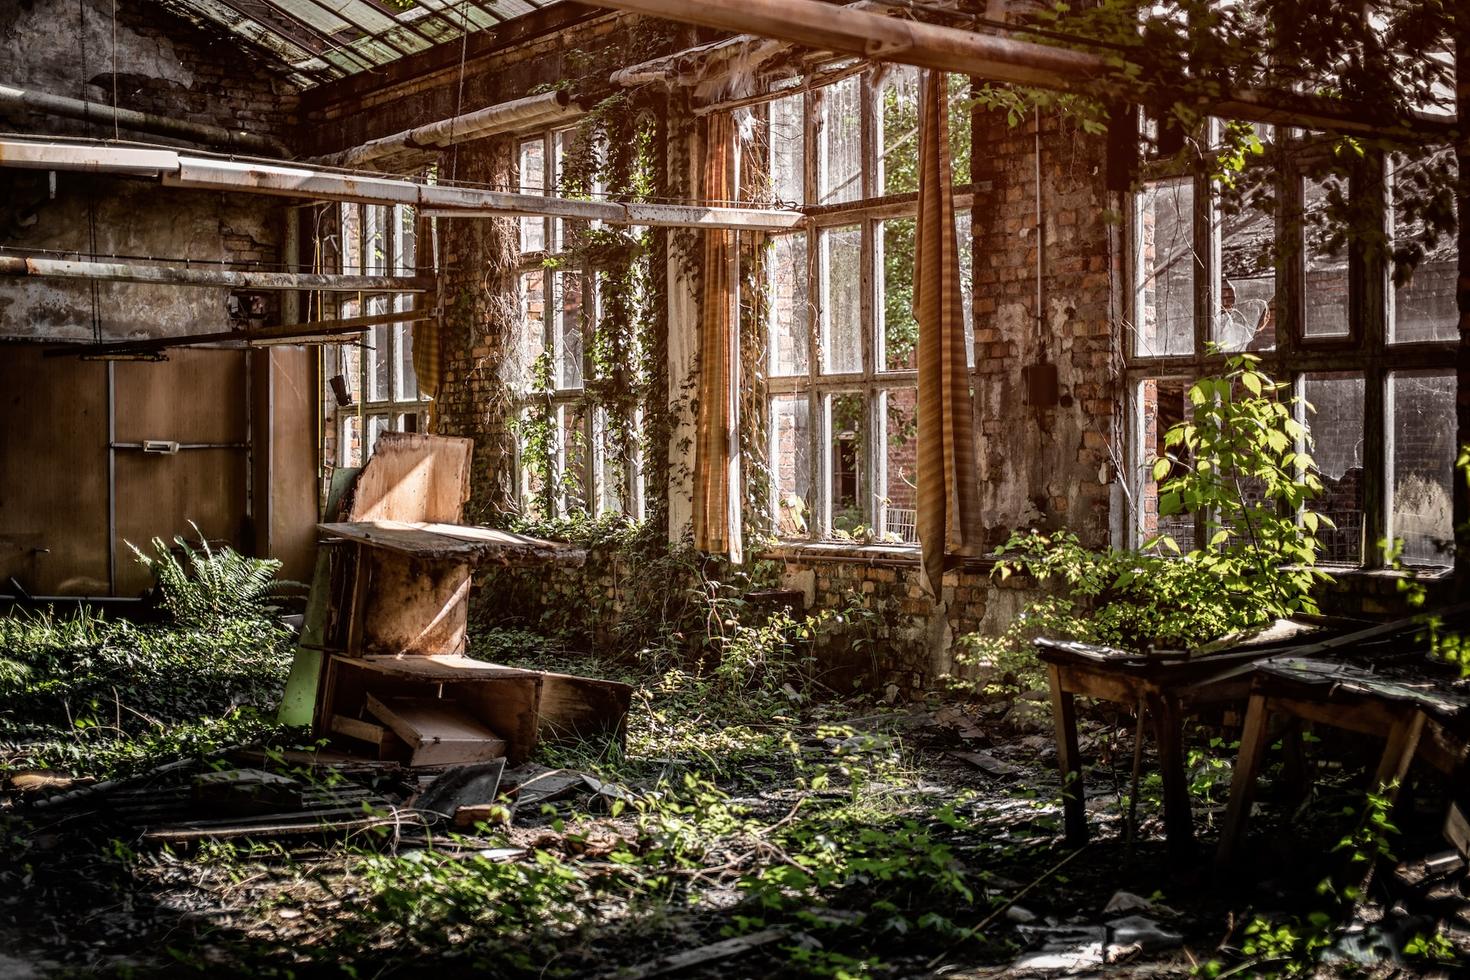 Chambre dans un bâtiment abandonné envahi par la végétation